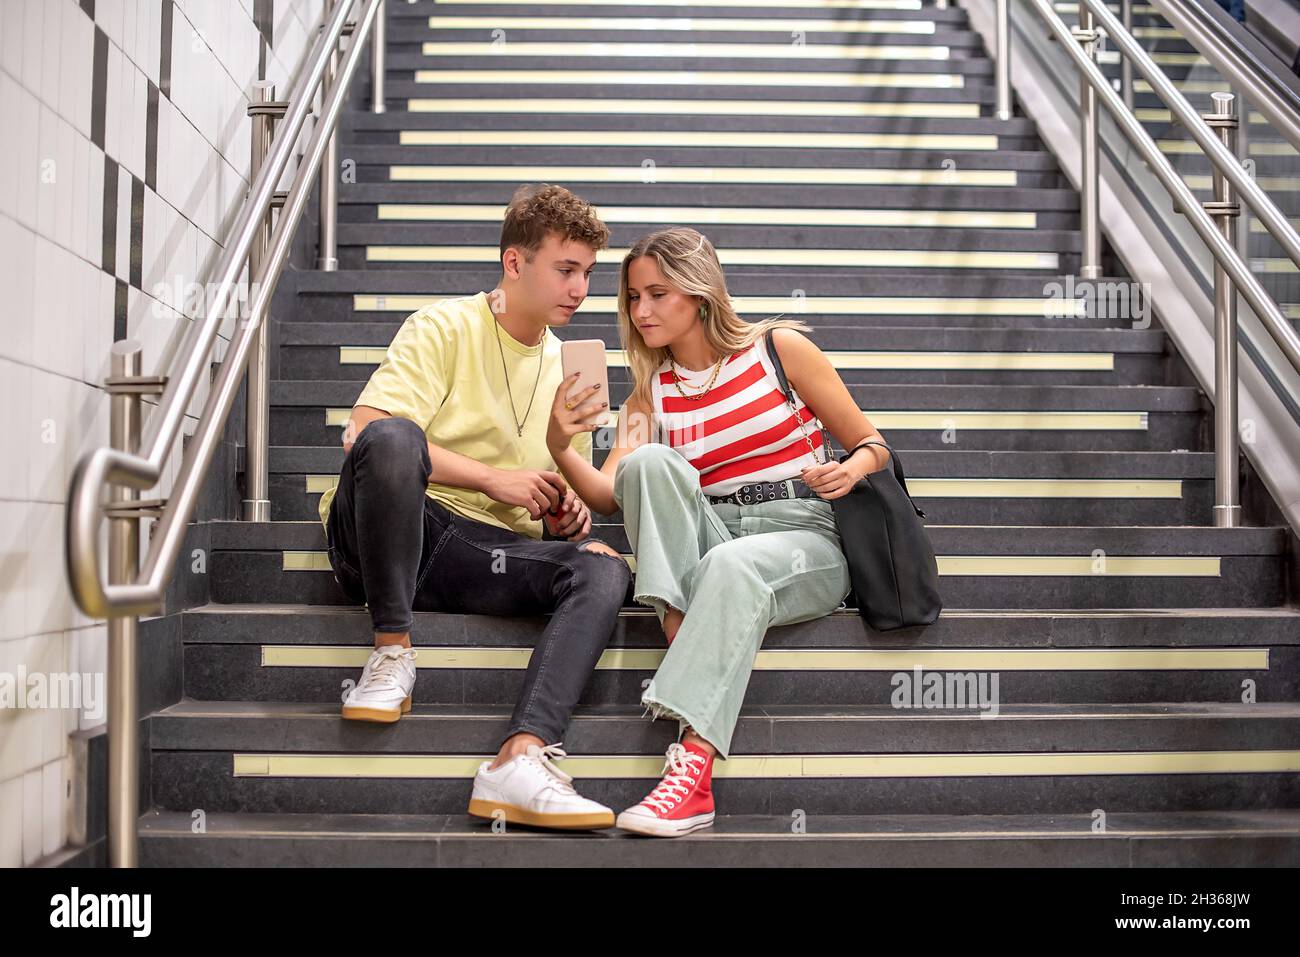 Ein junger Mann und eine junge Frau, die auf der Treppe einer U-Bahnstation sitzen. Das Mädchen zeigt dem Jungen etwas auf ihrem Handy Stockfoto